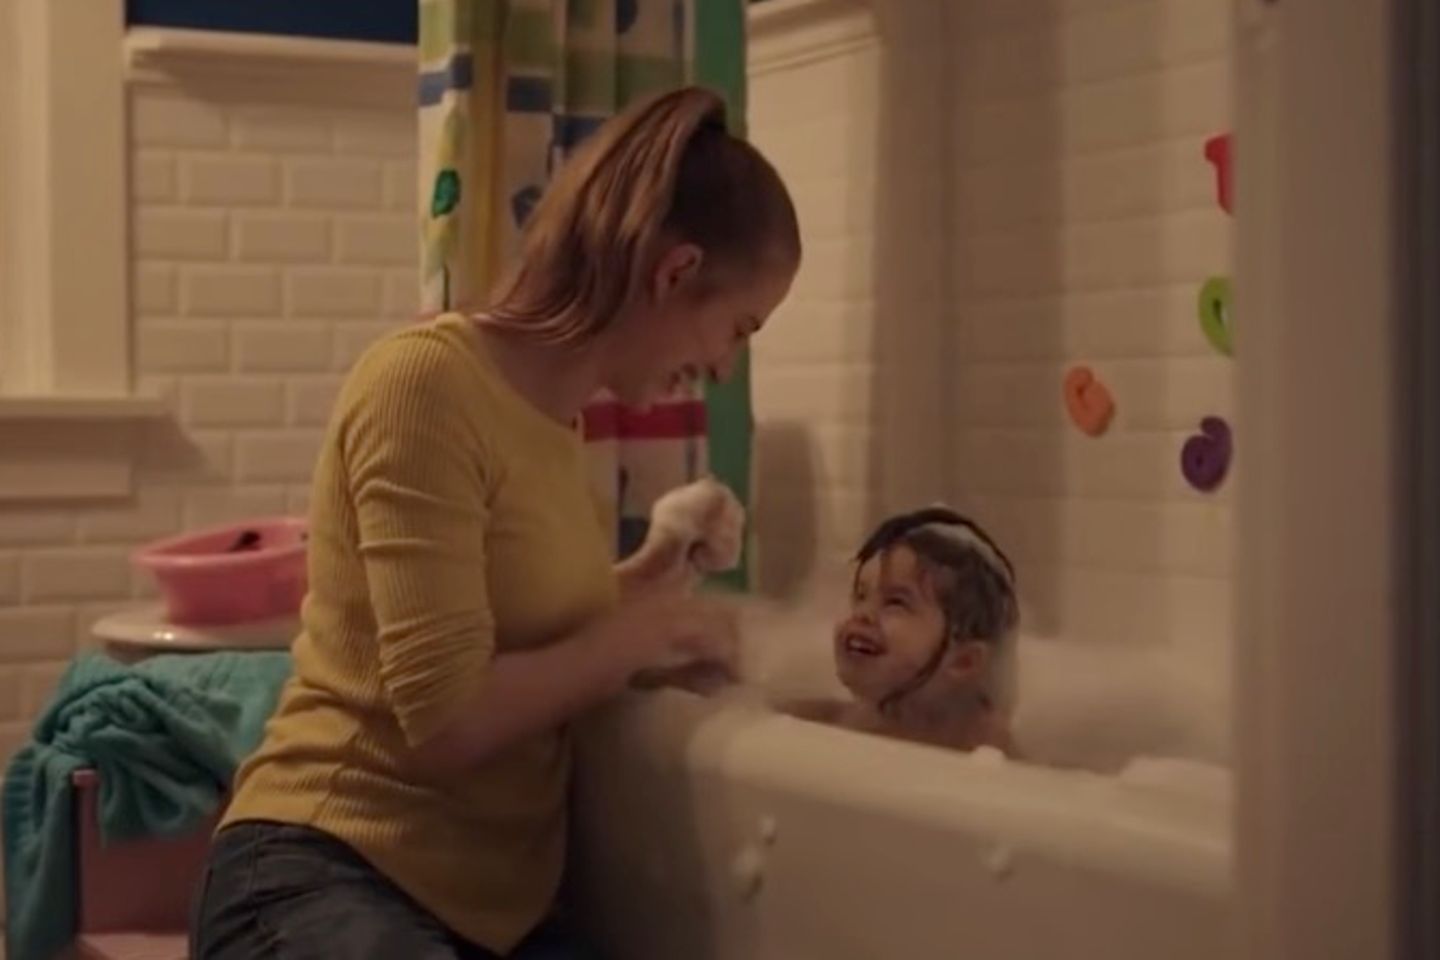 Kinder werden schnell groß: Mama spielt mit Tochter in der Badewanne